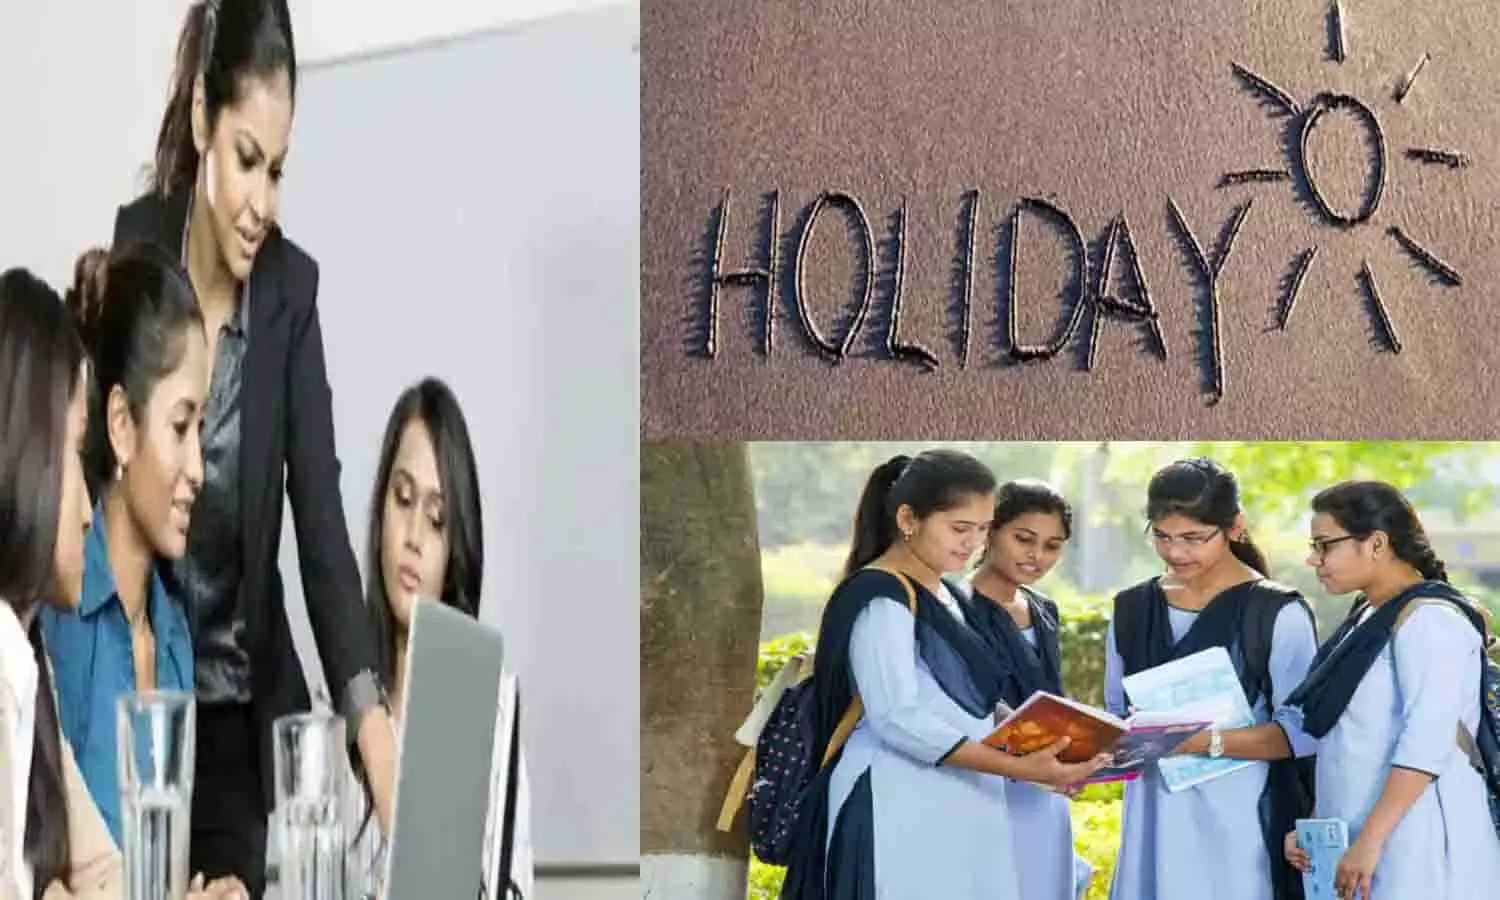 Holiday 2023: बड़ी खबर! महिला कर्मचारियों और 18 साल पूरा कर चुकी छात्राओं को 60 दिन का अलग अवकाश देने का निर्देश जारी